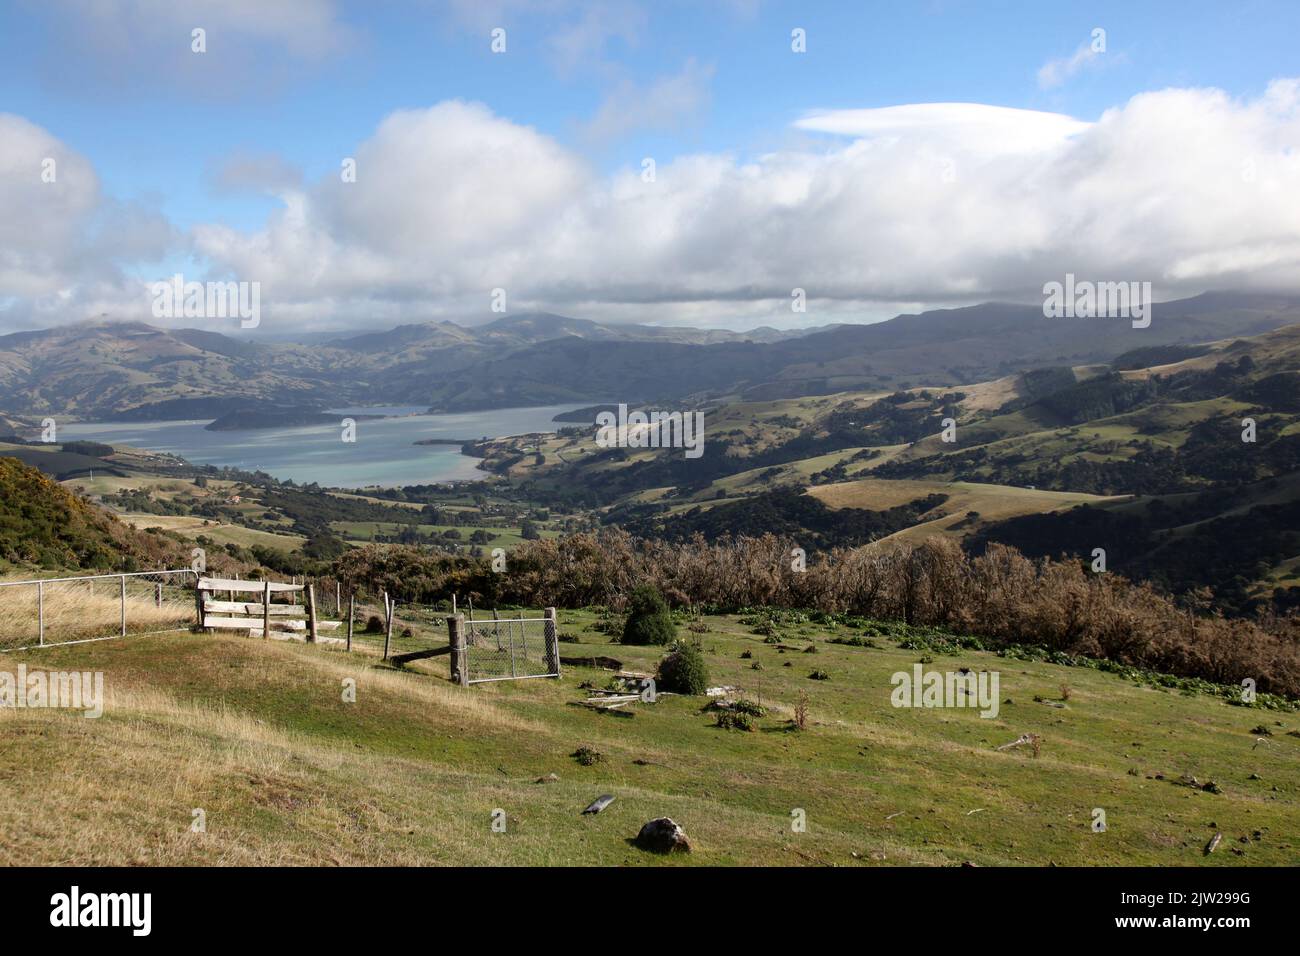 Paesaggio agricolo spazzato dal vento vicino ad Akaroa nell'Isola Sud della Nuova Zelanda. La regione della penisola di Banks è una destinazione turistica. Foto Stock